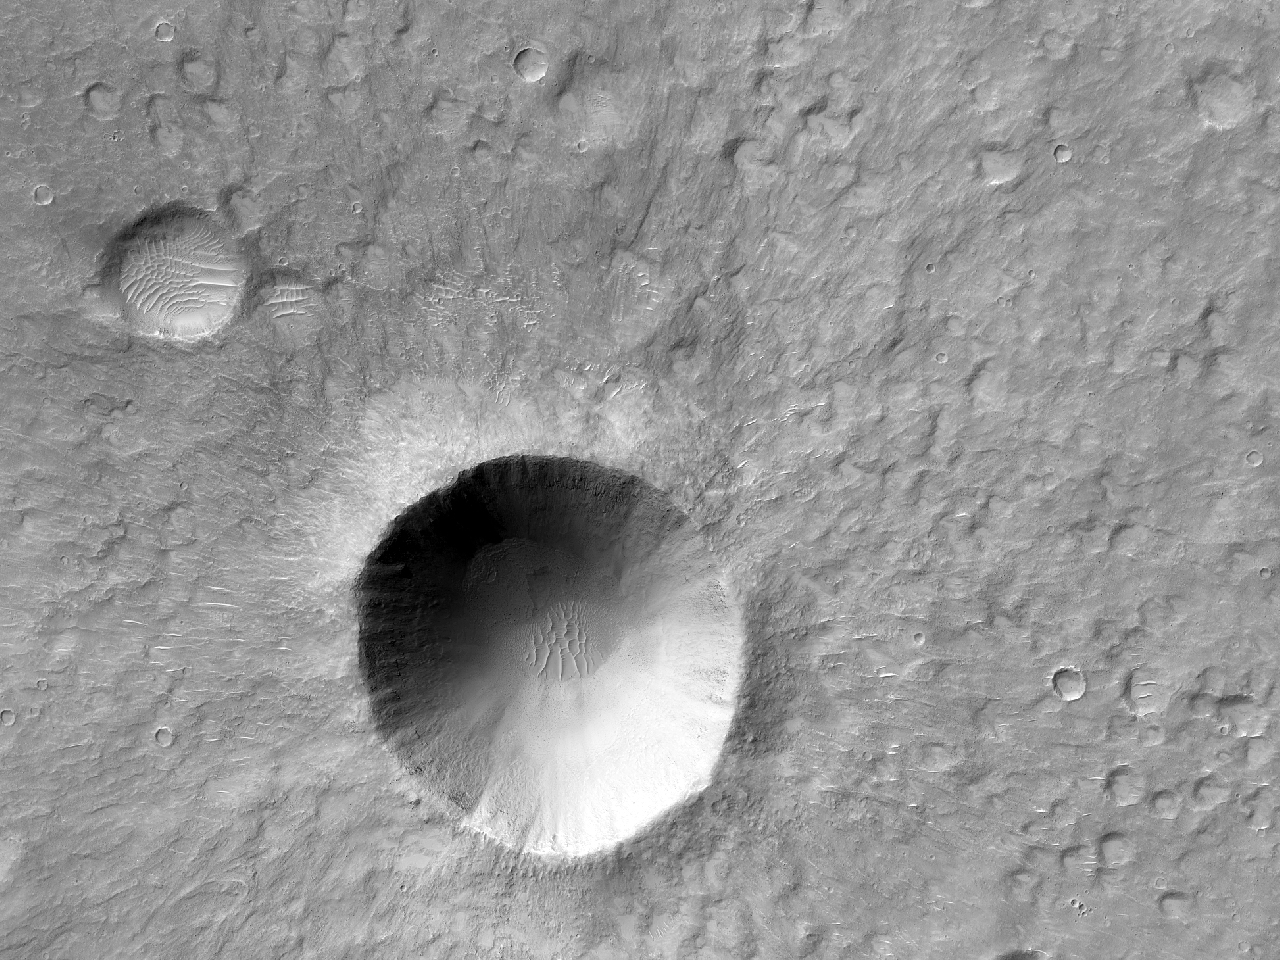 Piccolo cratere recente